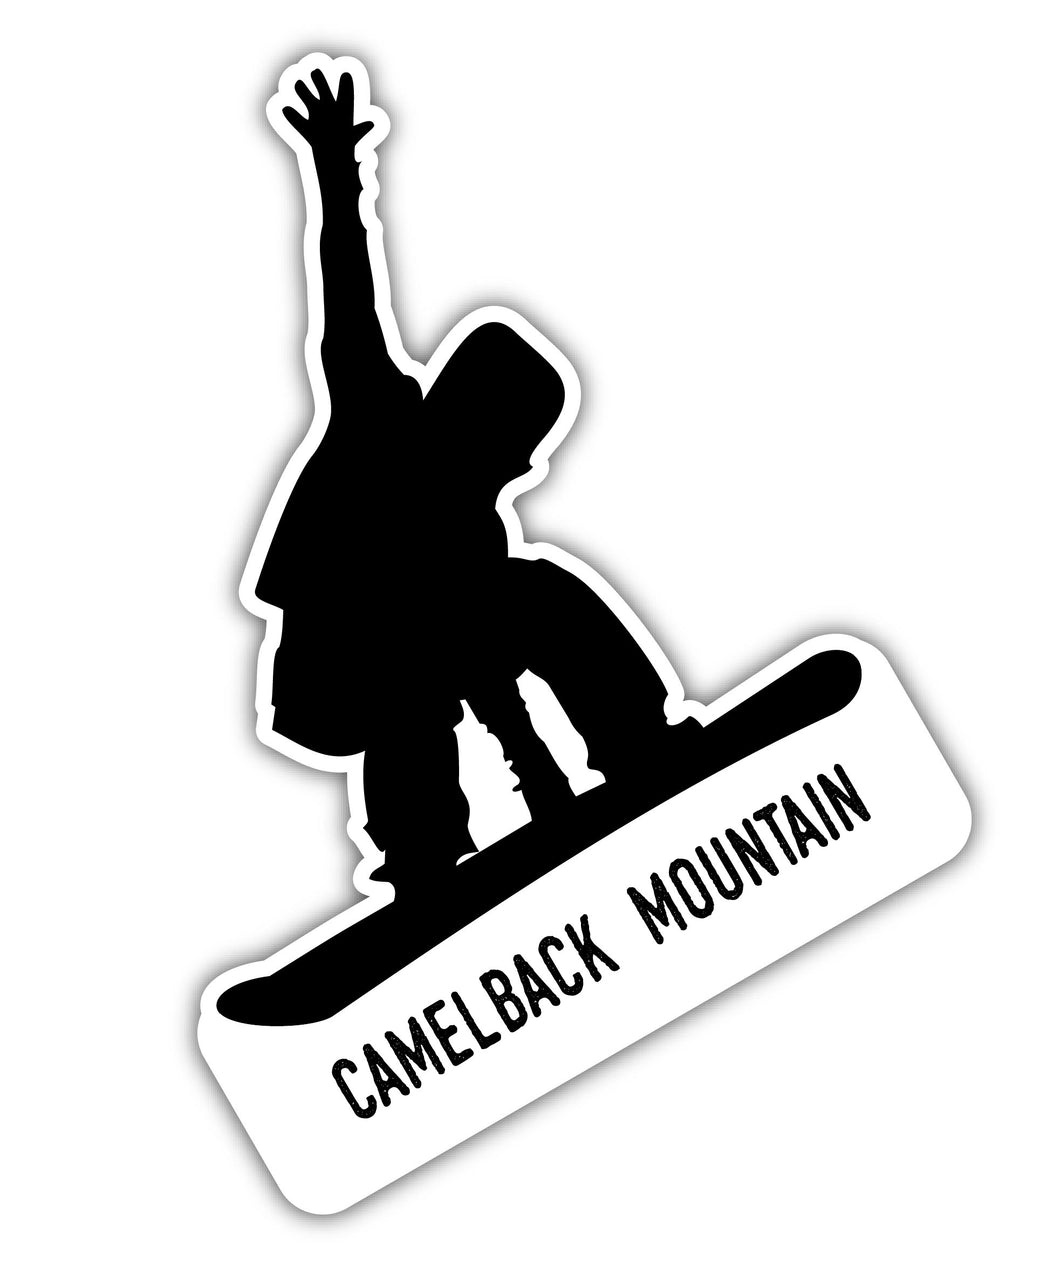 Camelback Mountain Pennsylvania Ski Adventures Souvenir Approximately 5 x 2.5-Inch Vinyl Decal Sticker Goggle Design